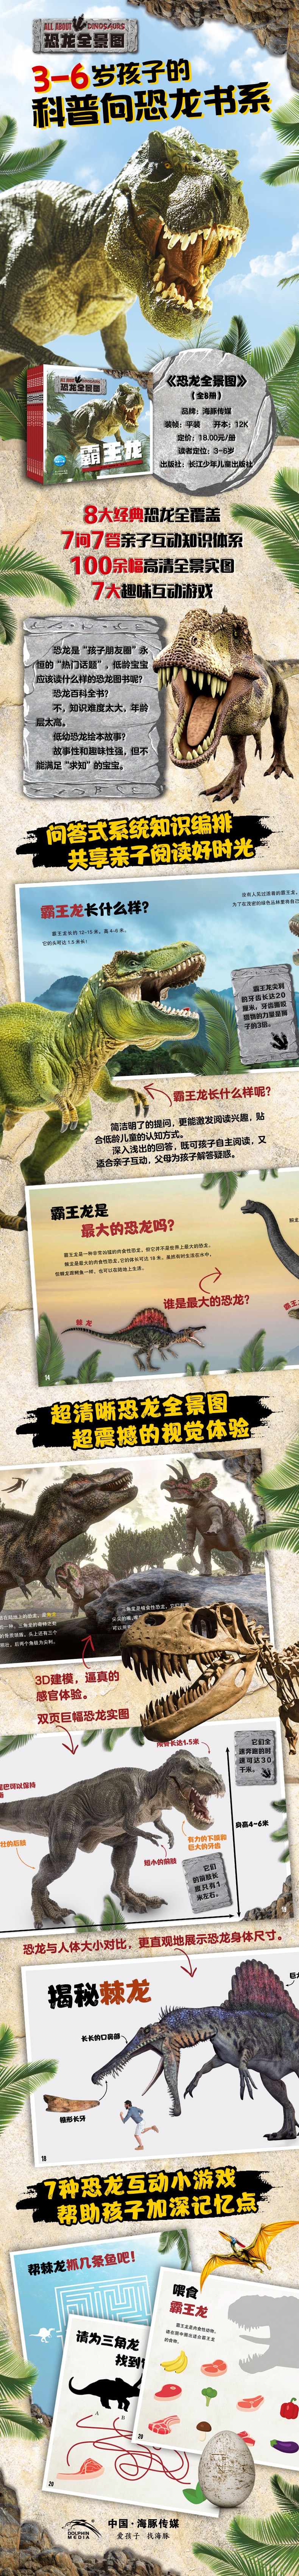 恐龙全景图-详情页-790.jpg